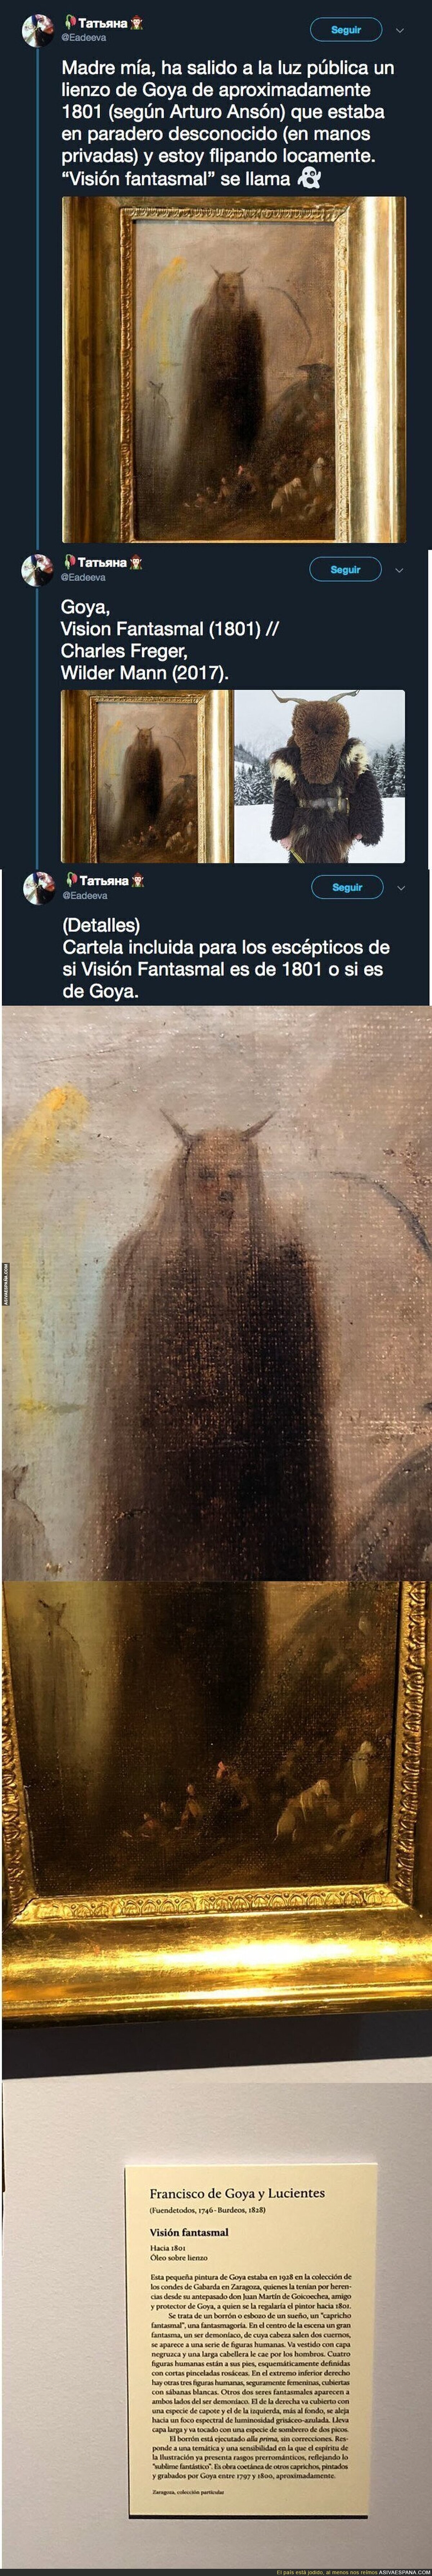 El lienzo de Goya que ha salido a la luz y que está haciendo tener pesadillas a la gente